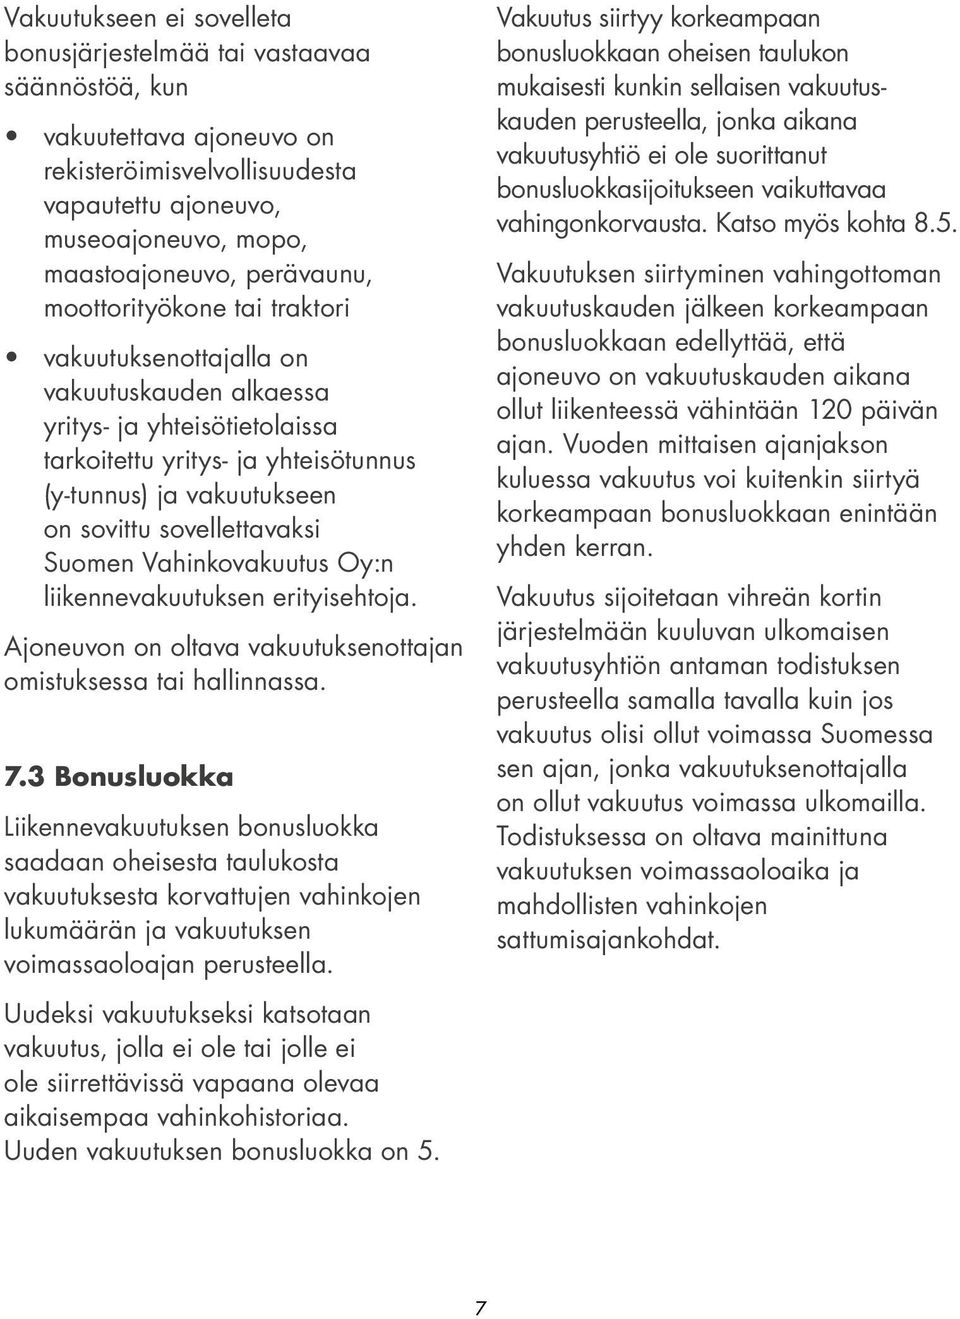 Suomen Vahinkovakuutus Oy:n liikennevakuutuksen erityisehtoja. Ajoneuvon on oltava vakuutuksenottajan omistuksessa tai hallinnassa. 7.